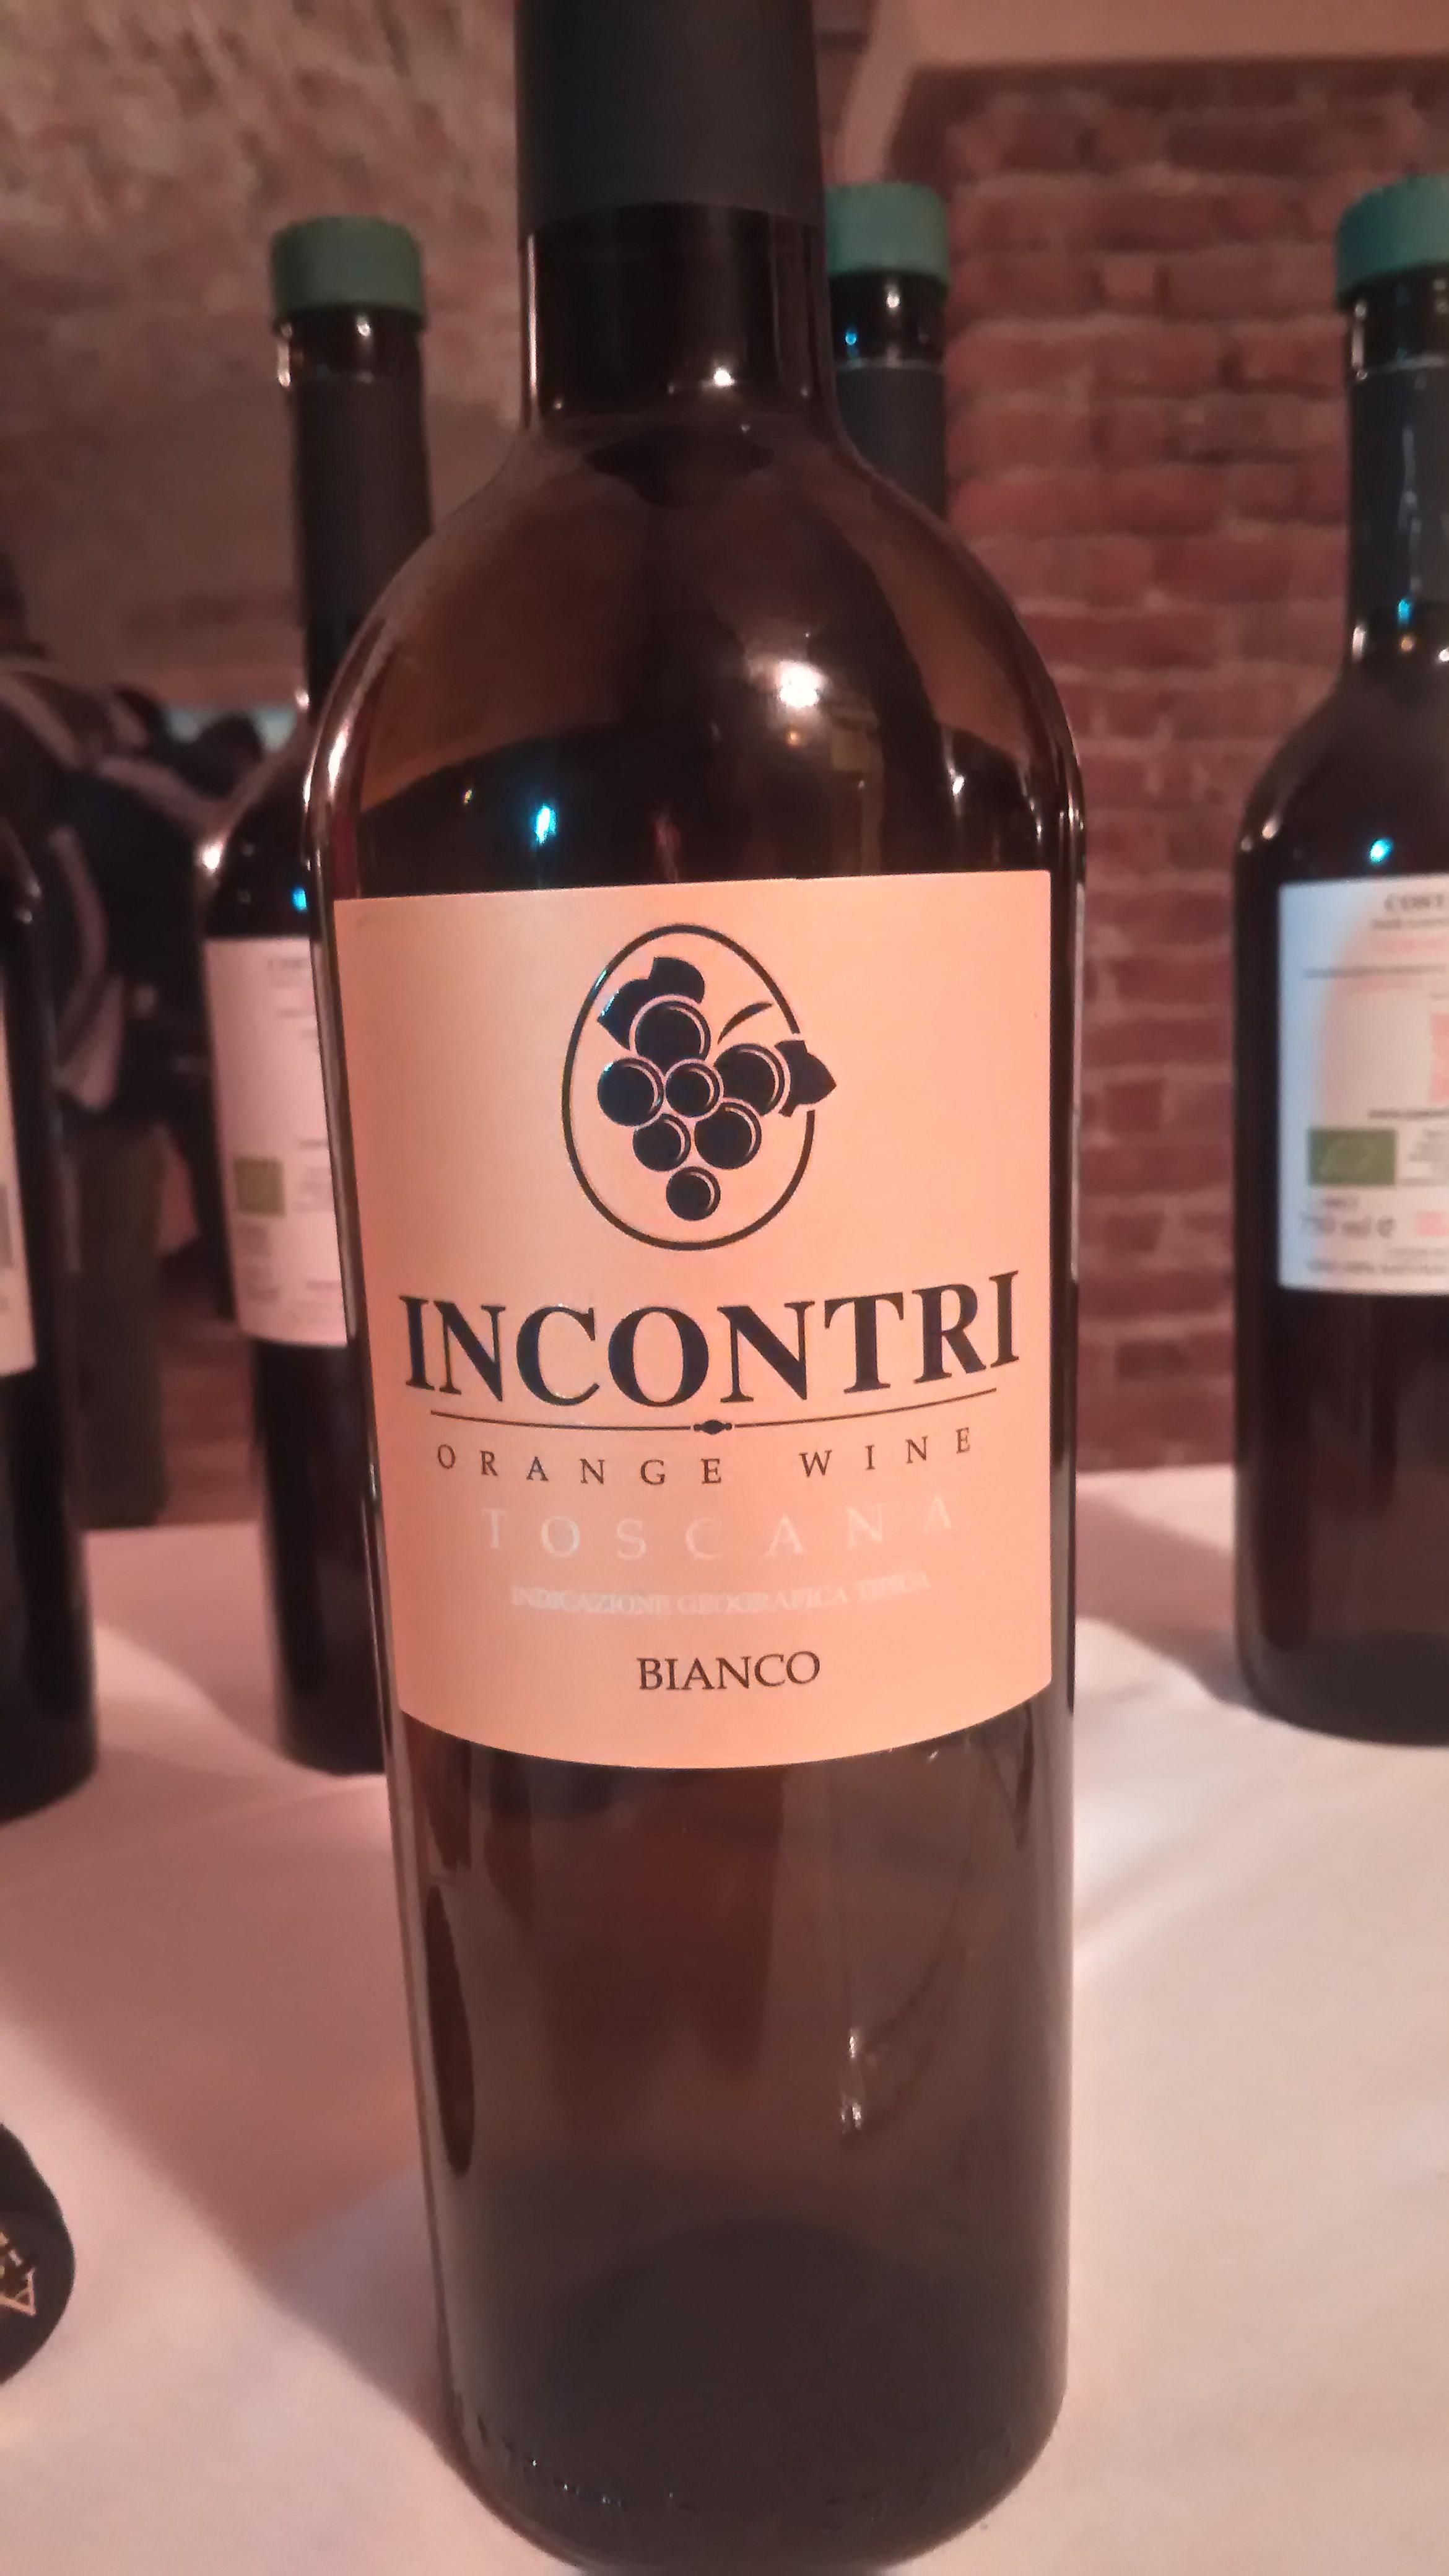 INCONTRI Orange wine